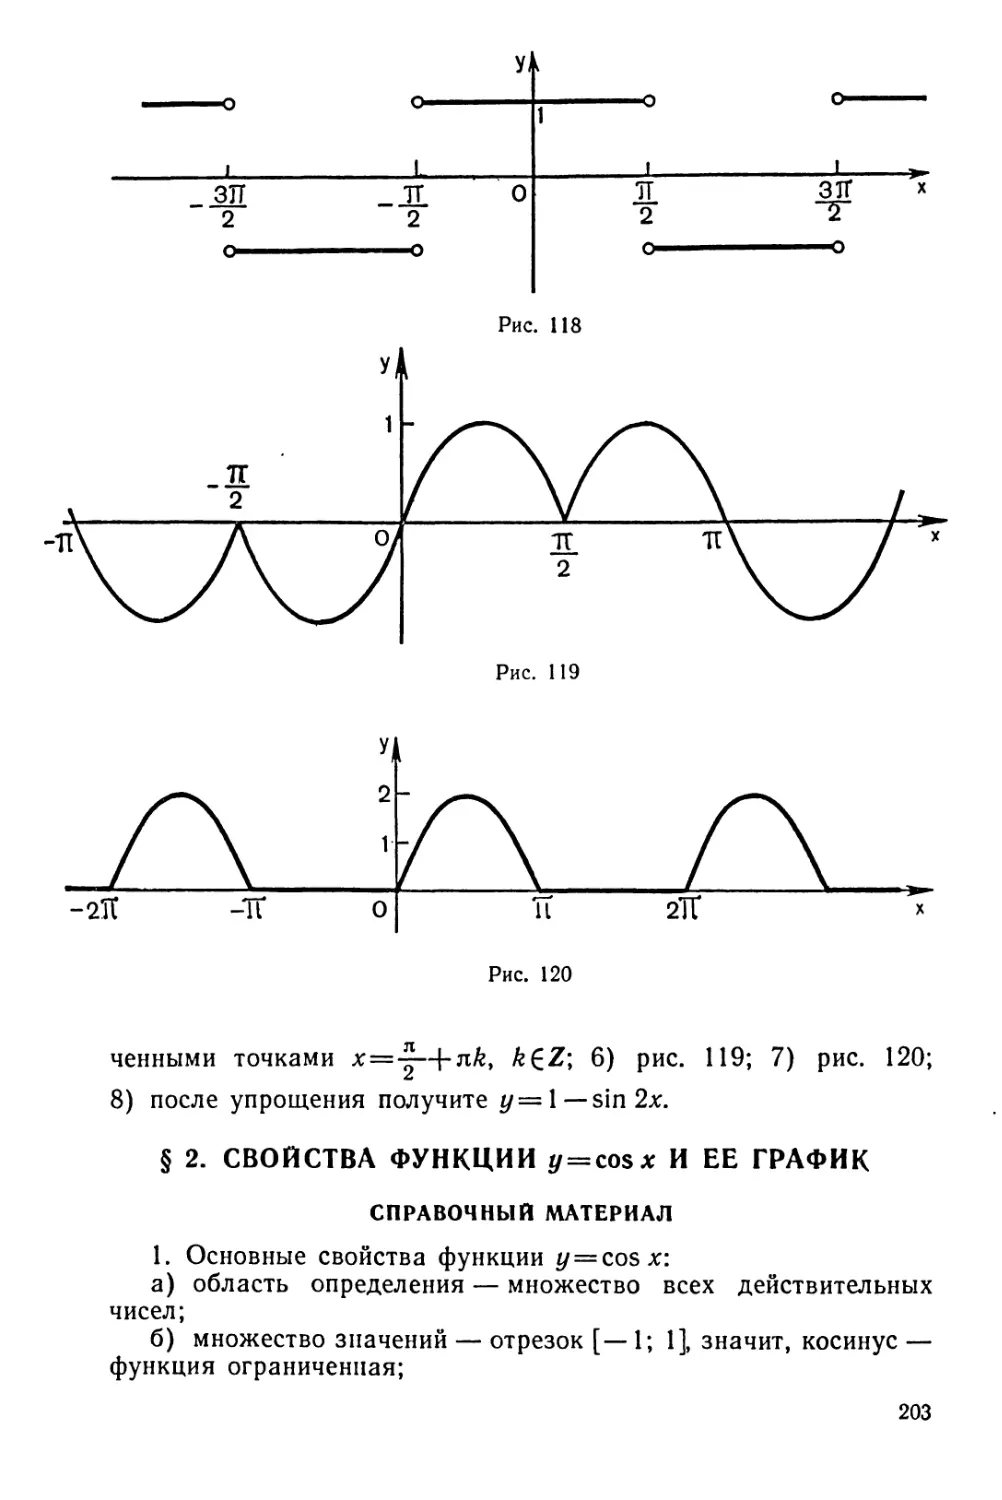 Свойства функции y=cos x и ее график